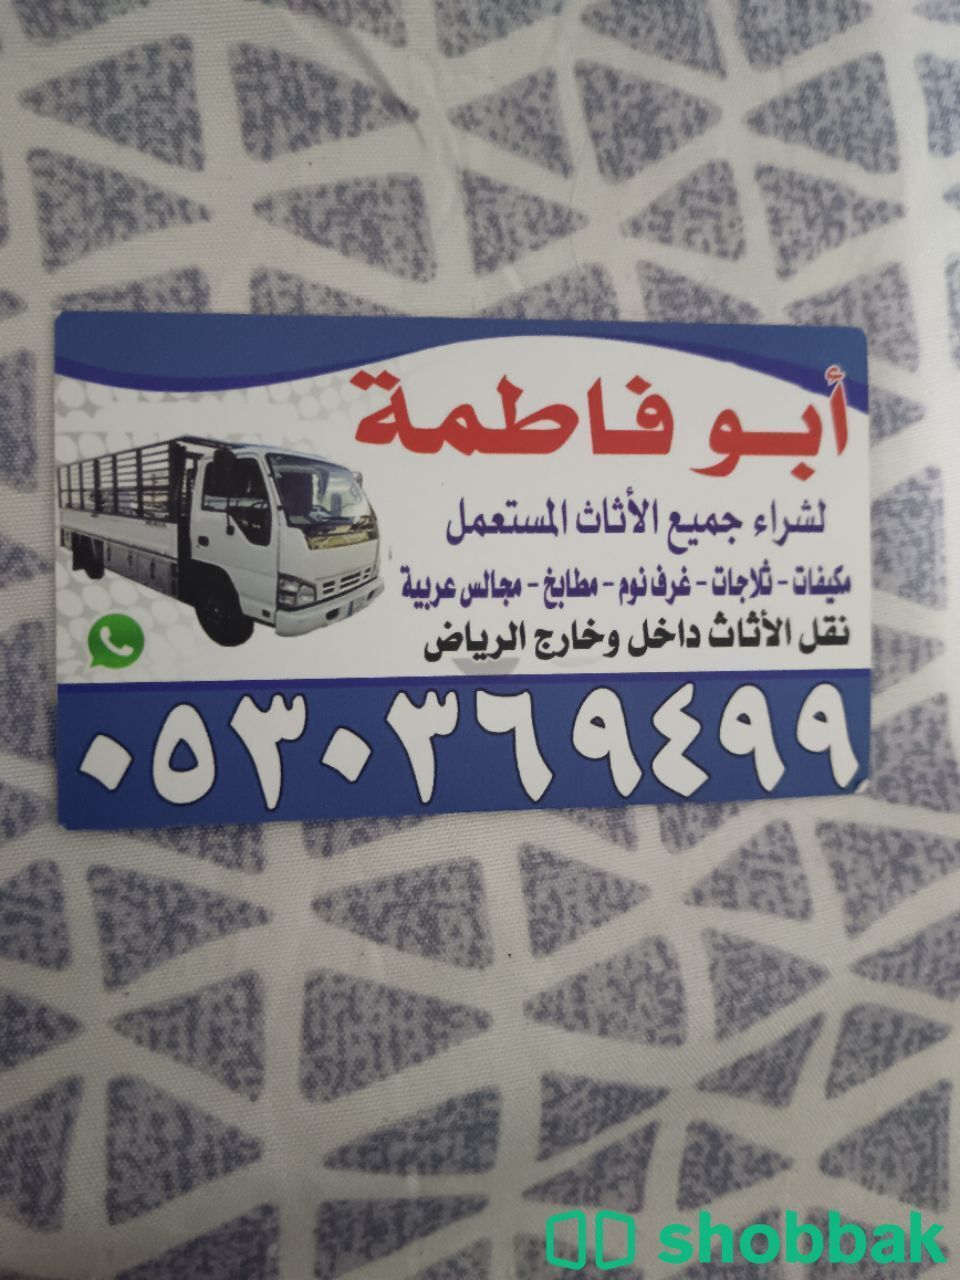 شراء أثاث مستعمل حي المعيزيلة 0530369499  Shobbak Saudi Arabia